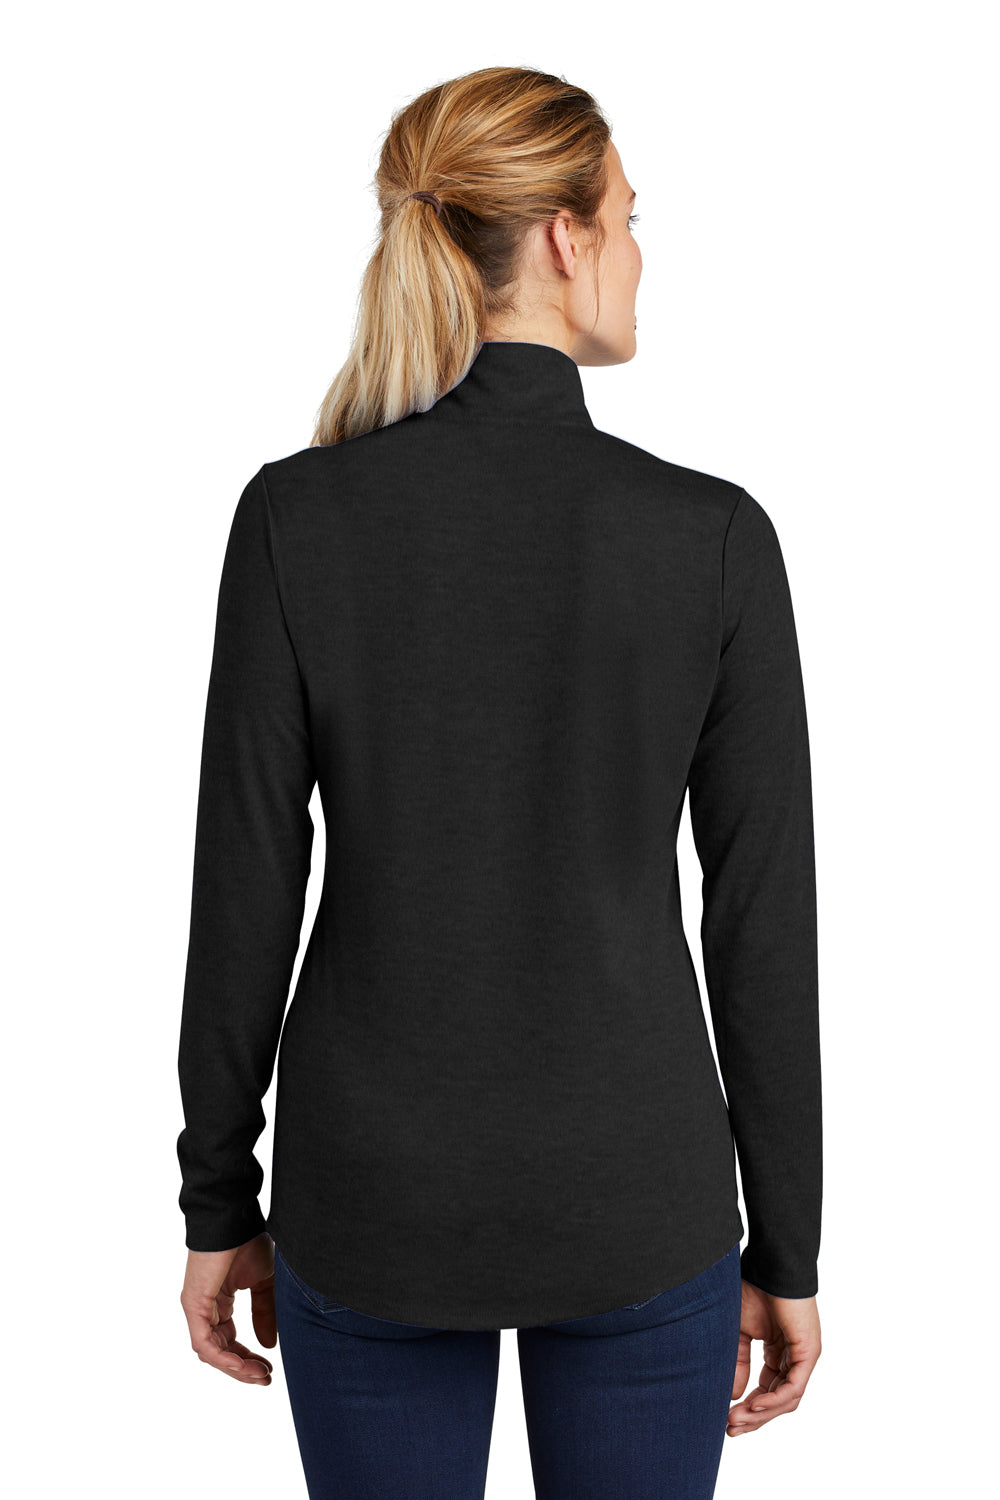 Sport-Tek LST407 Womens Moisture Wicking 1/4 Zip Sweatshirt Black Back